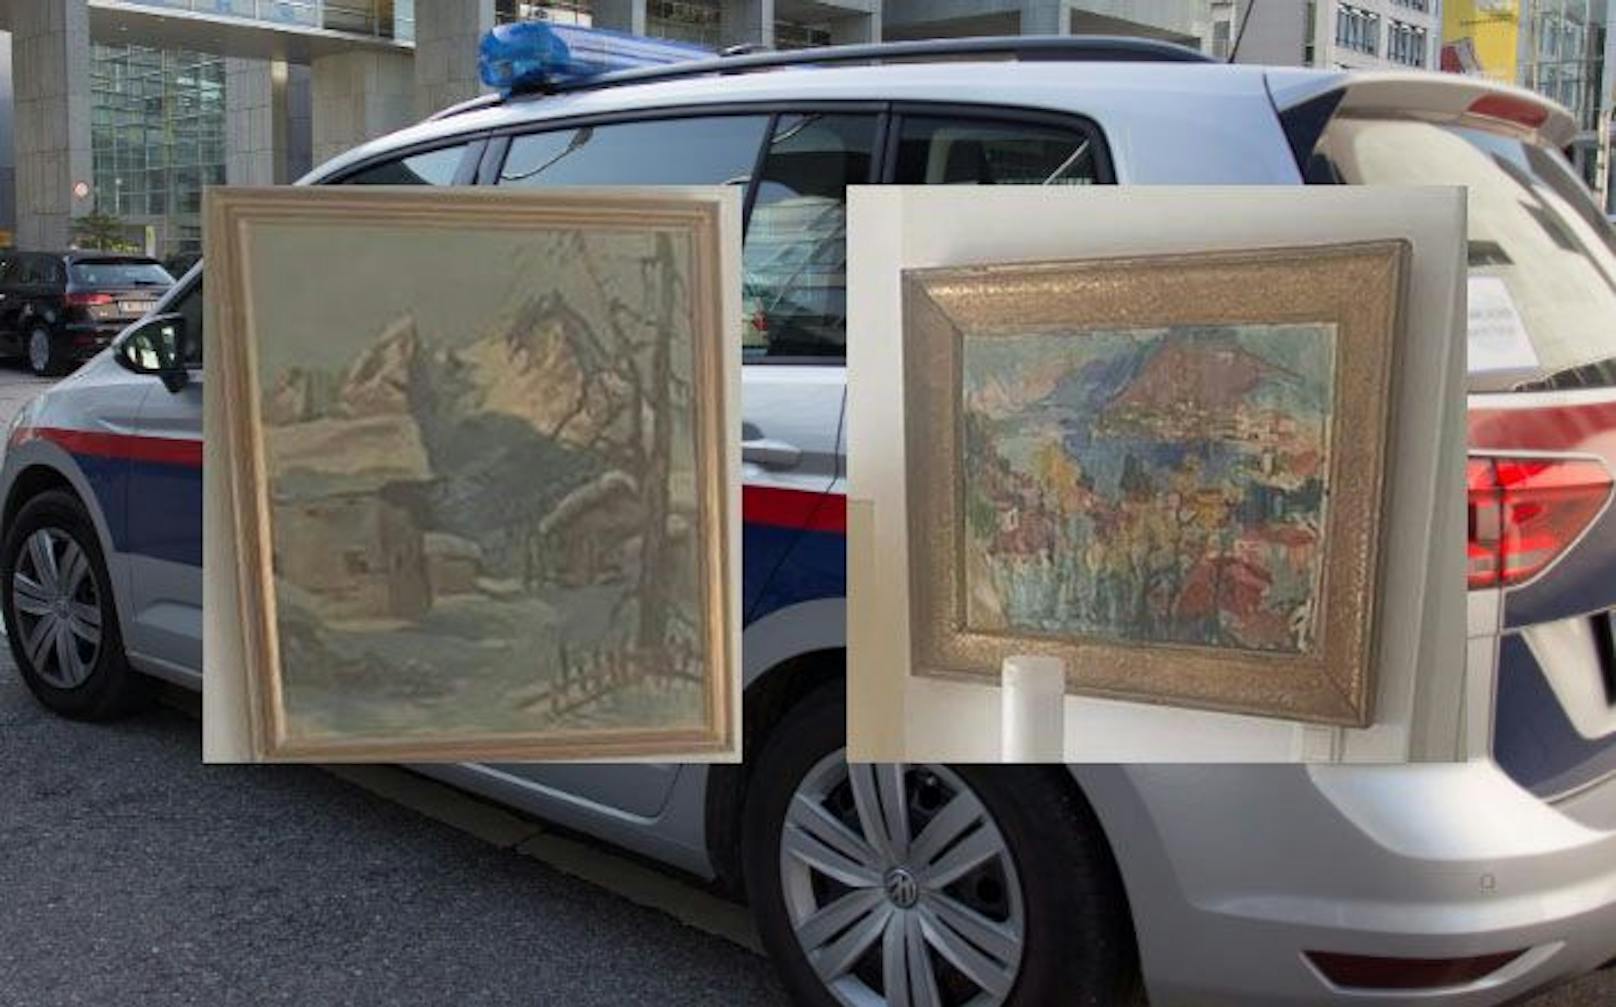 Zwei der verschwundenen Kunstwerke - die Polizei fahndet nach den Bildern.